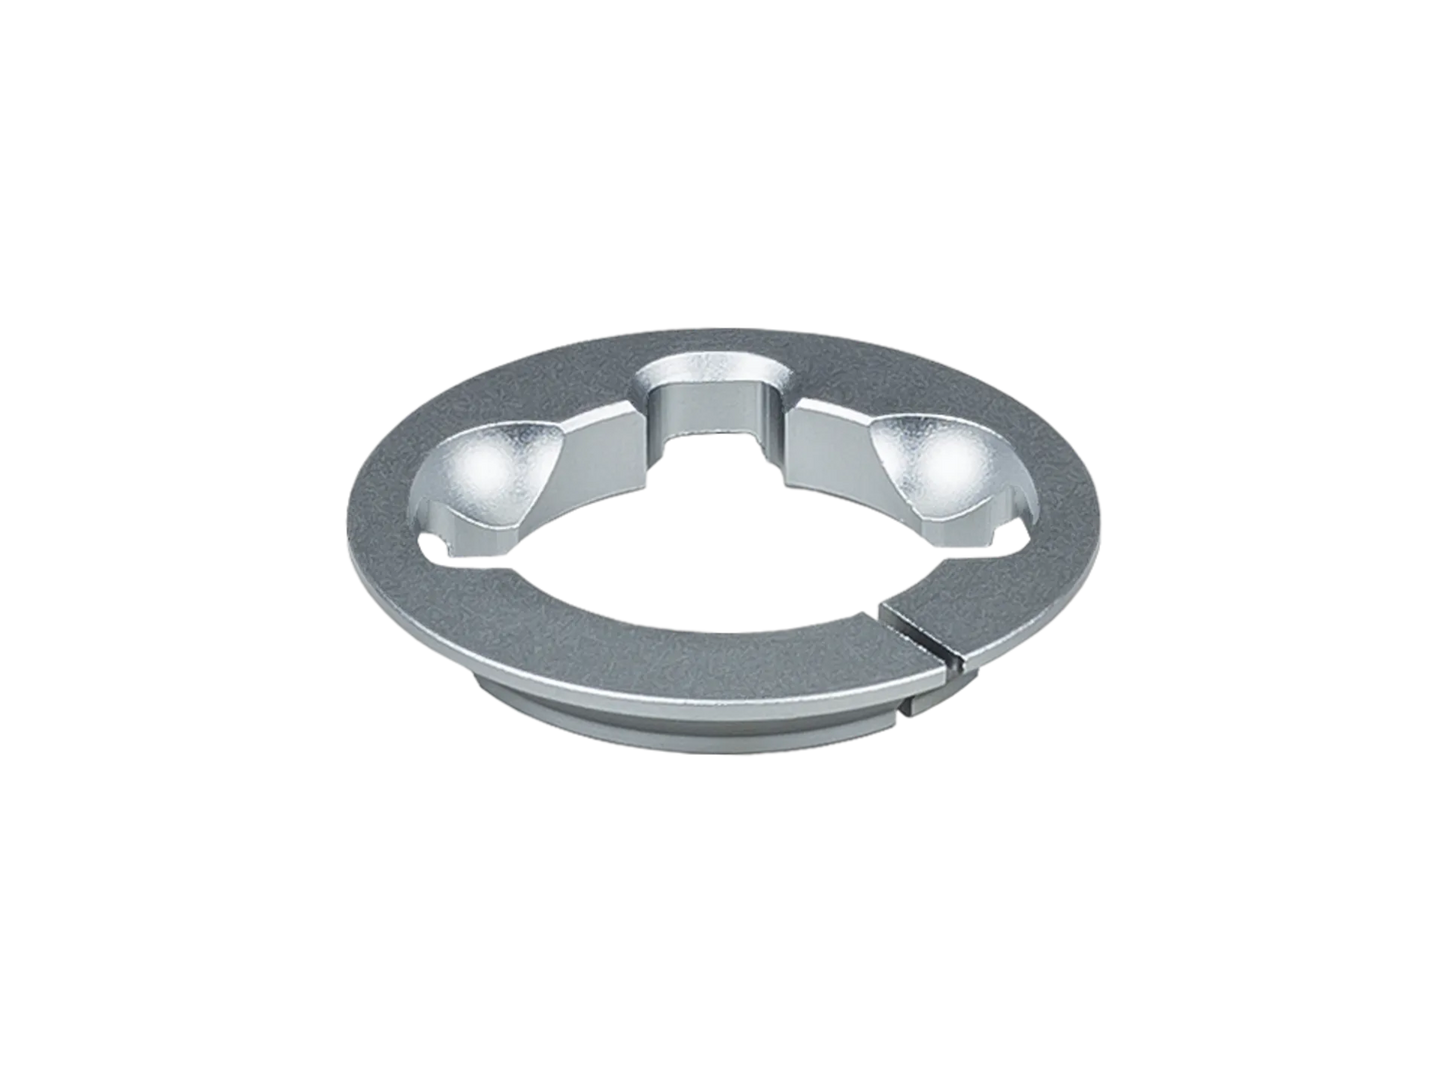 Trek Madone SLR Headset Split Ring